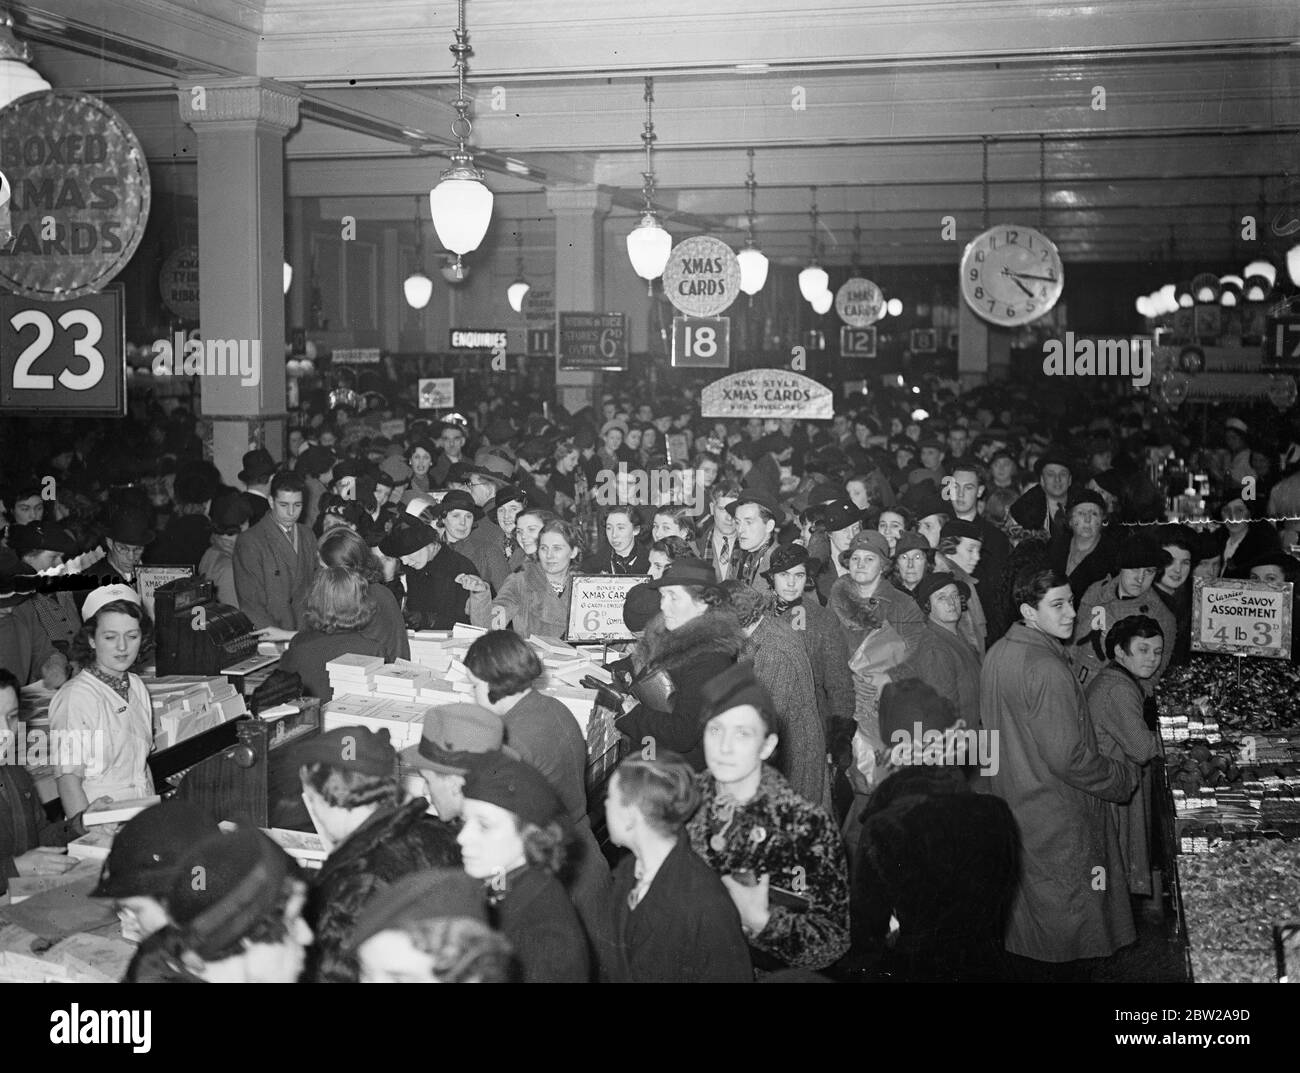 Les magasins de Noël affluaient vers les magasins du West End. Profiter des heures prolongées de la foule de grands magasins du West End à la recherche de cadeaux de Noël. Des spectacles de photos, un magasin bondé et décoré d'Oxford Street, aux prises de dernière minute. 20 décembre 1937 Banque D'Images